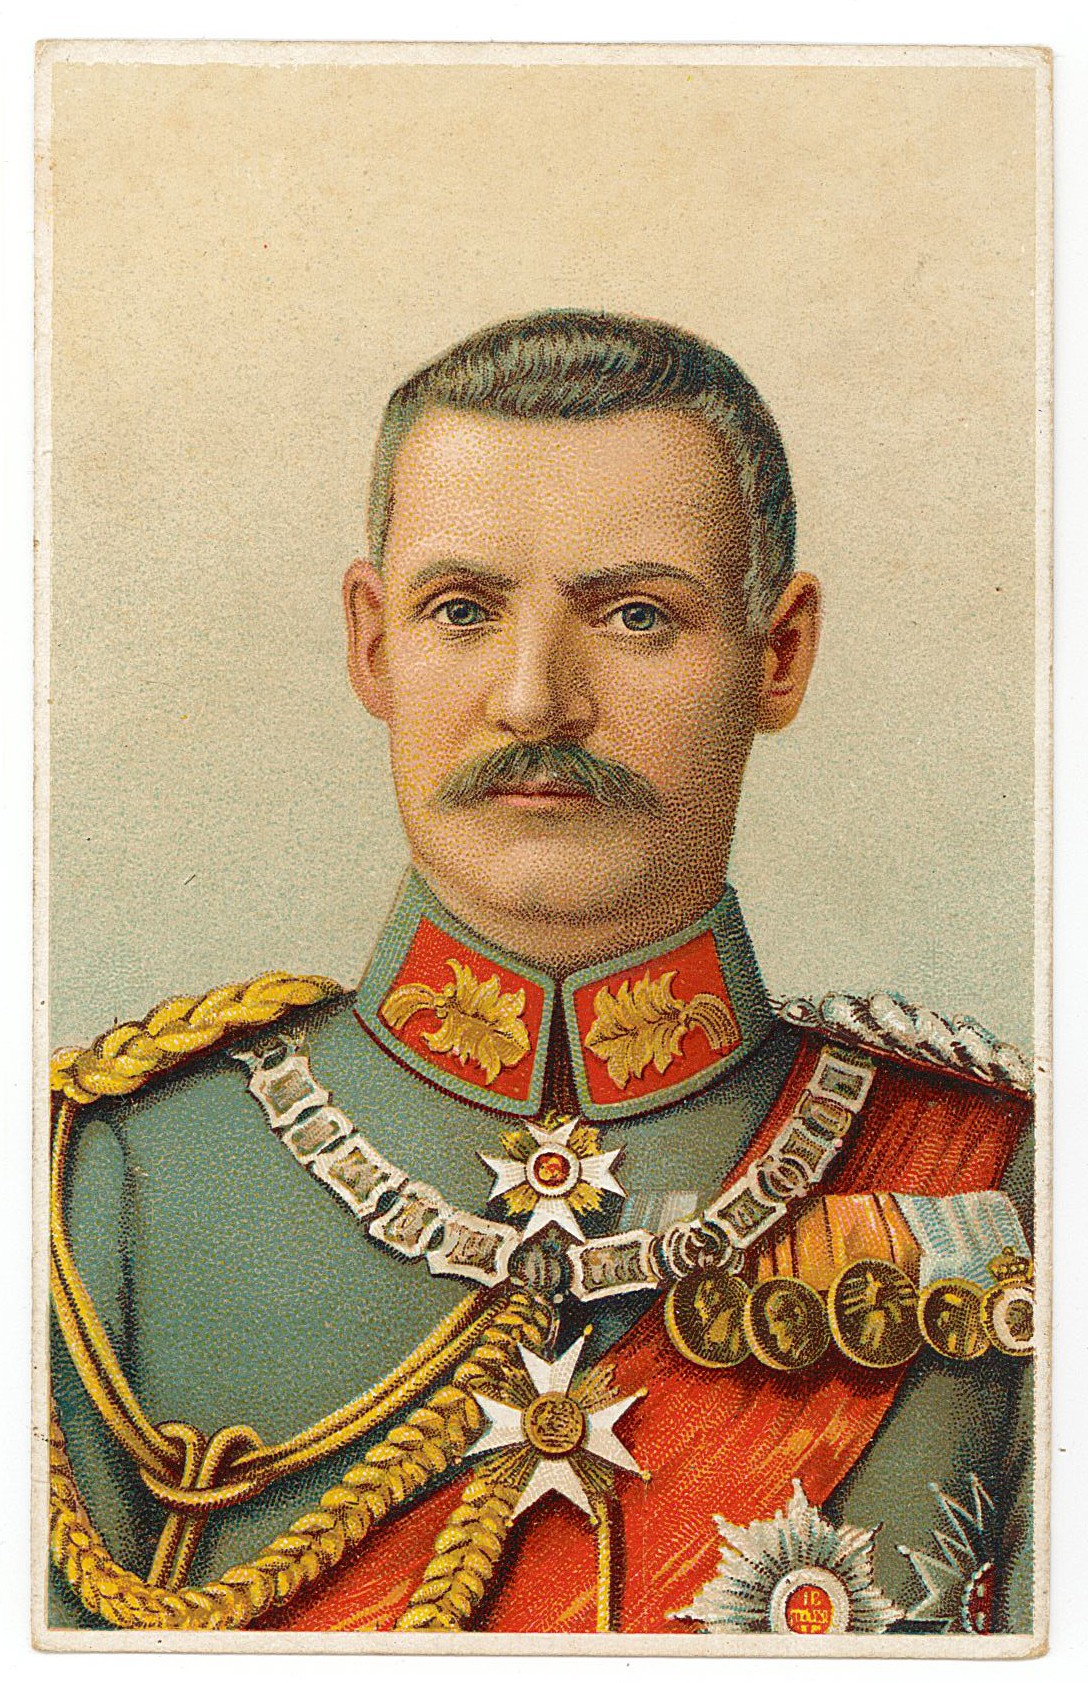 Postkarte von Erich Otto an seinen Vater Herrmann Otto, 01.04.1918 (Museum Wolmirstedt RR-F)